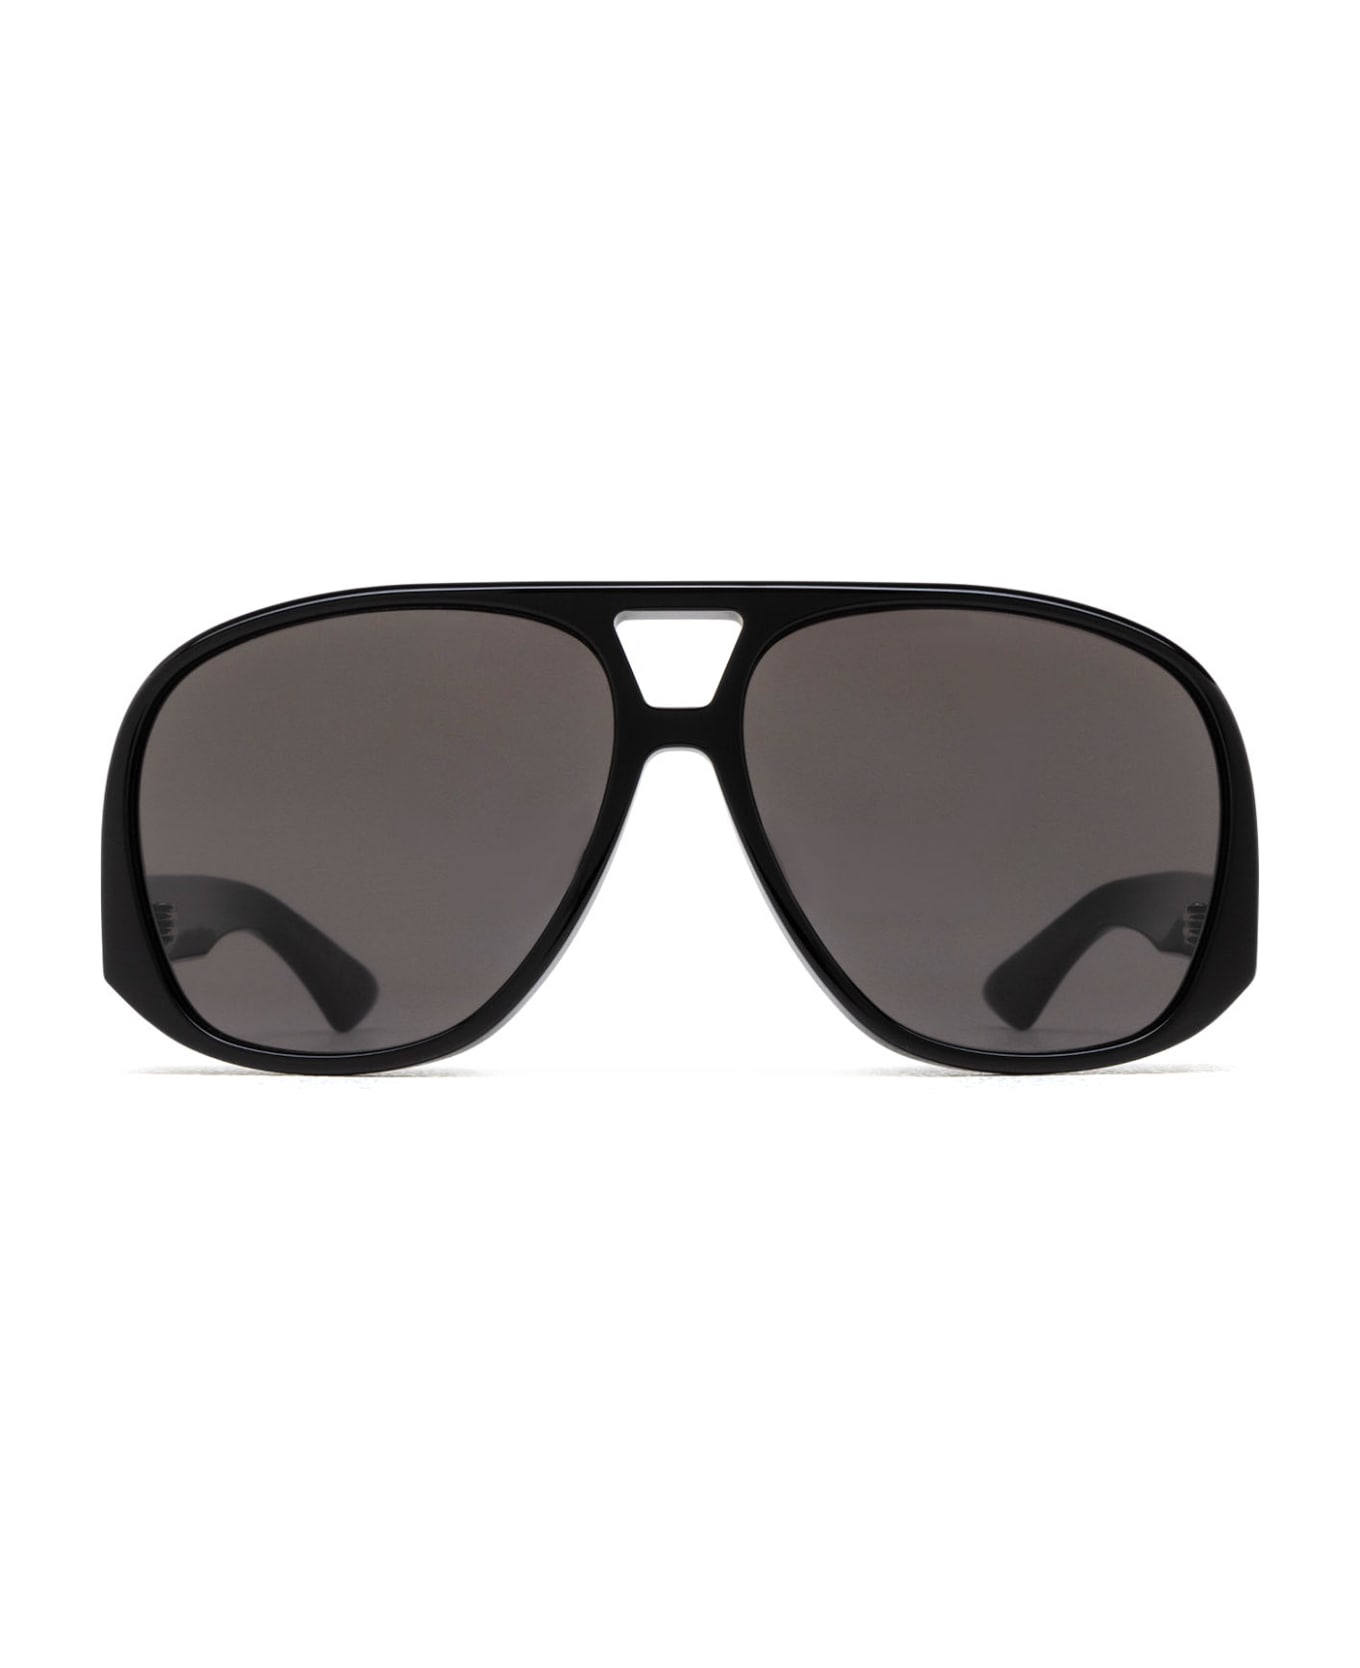 Saint Laurent Eyewear Sl 652/f Black Sunglasses - Black